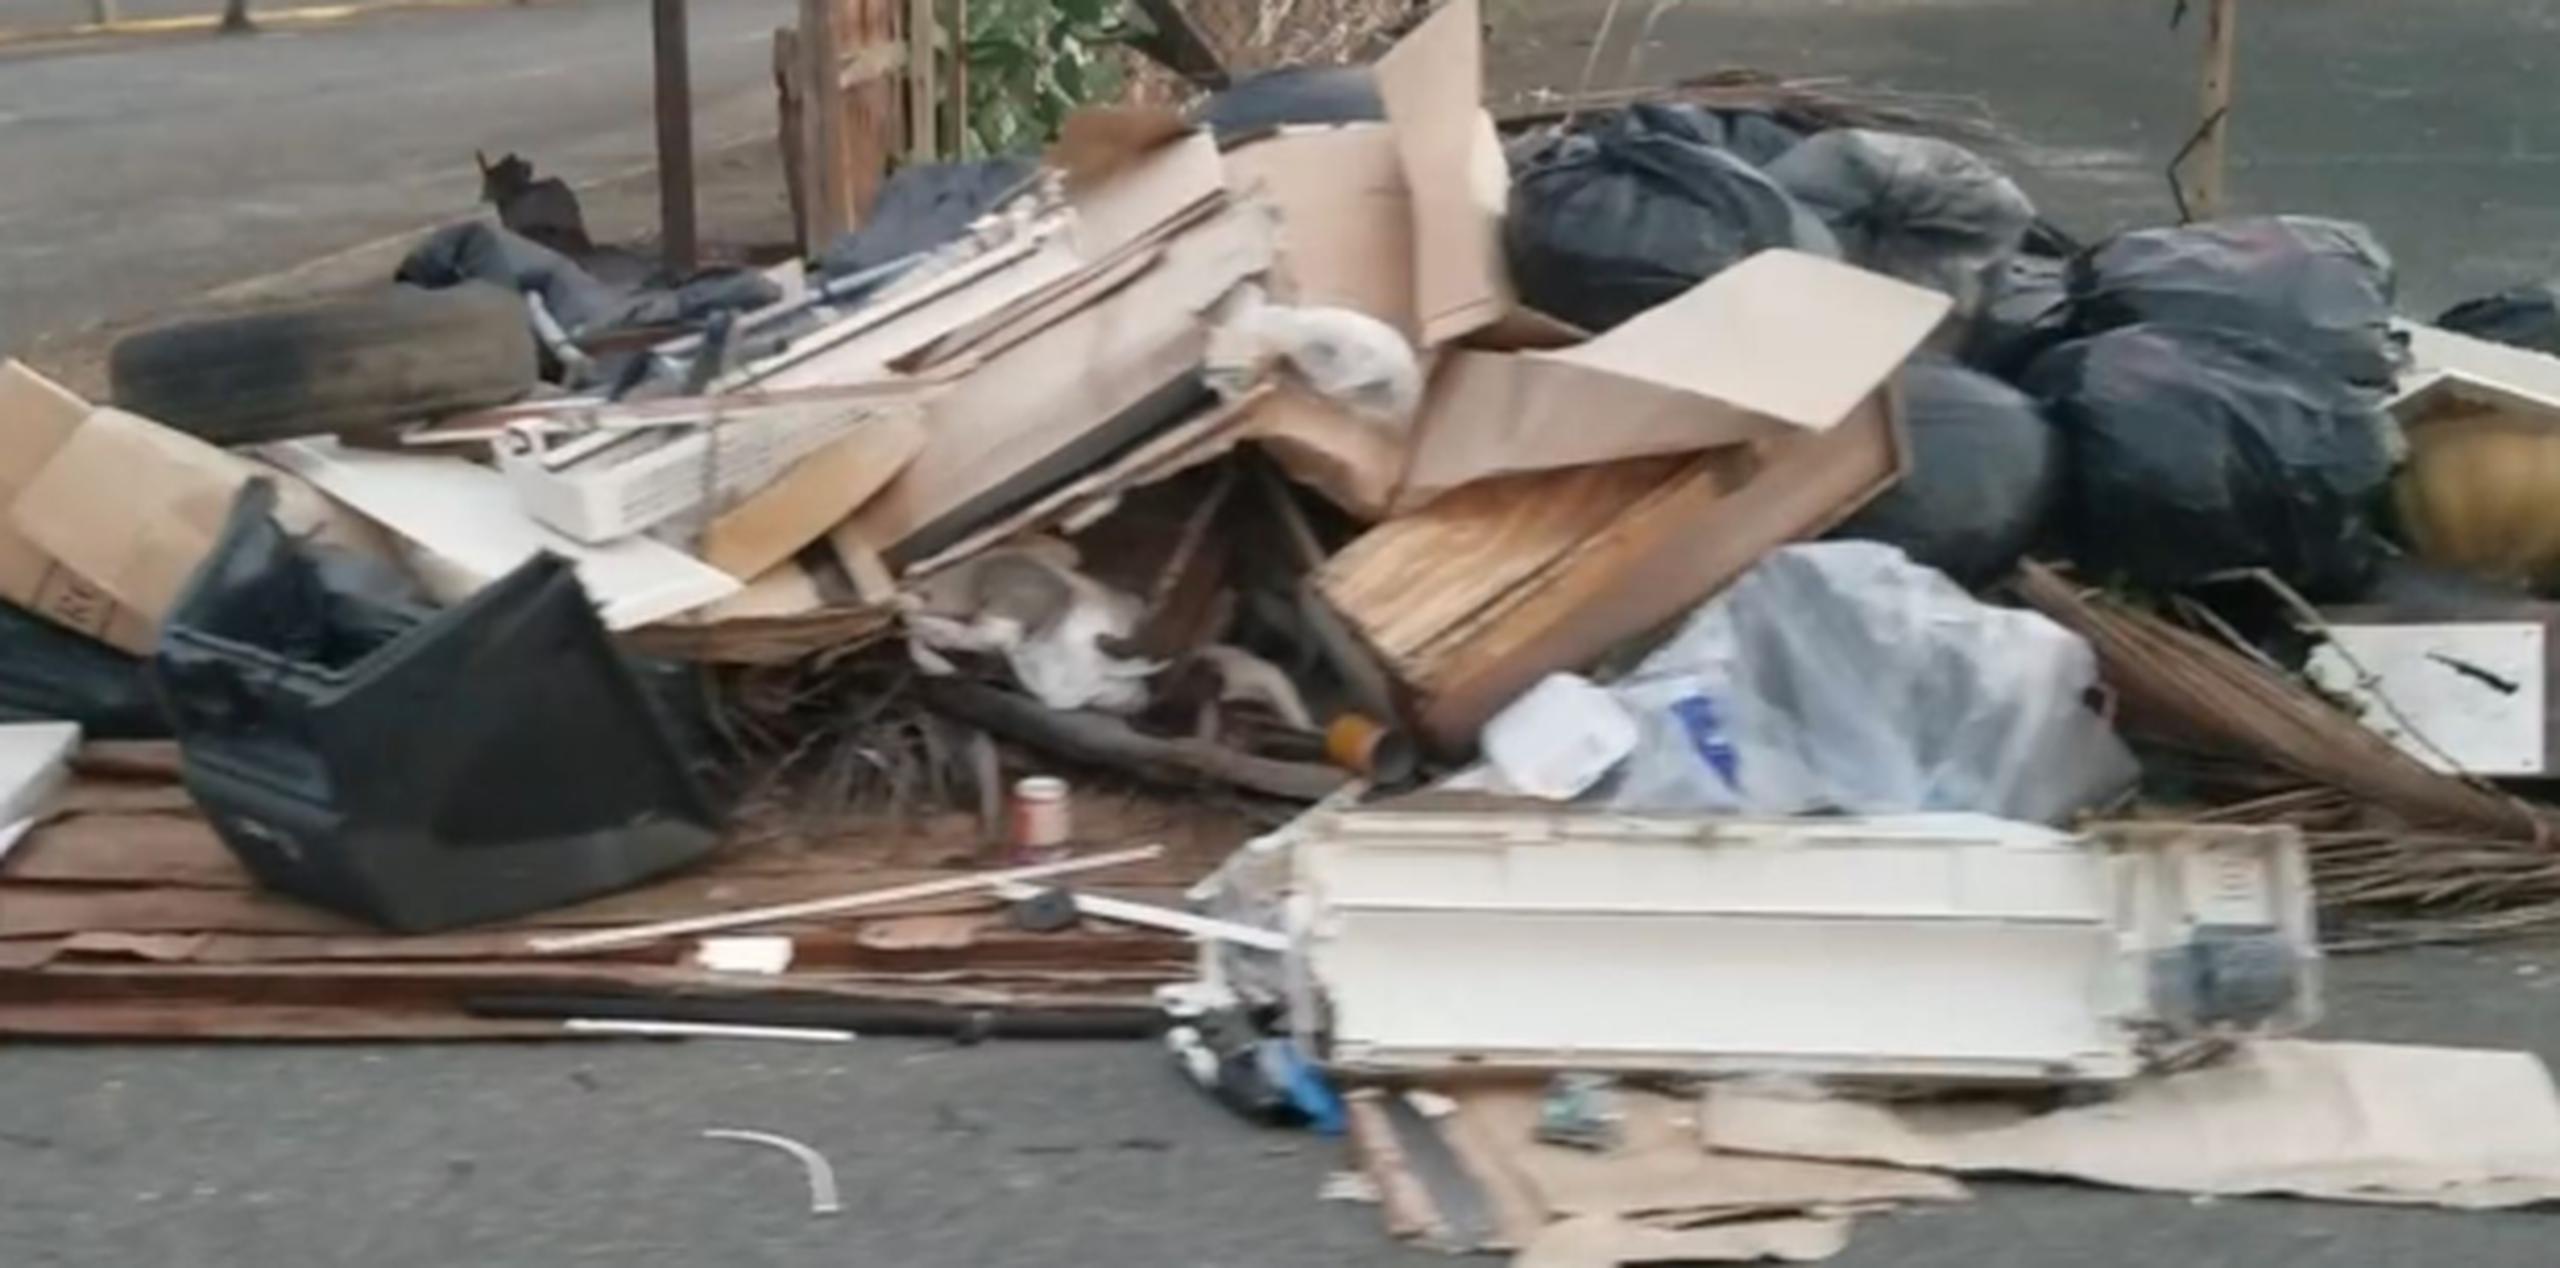 El video que colocó Piñeiro sobre la problemática de la basura ha sido visto unas 63,000 veces. (Archivo)